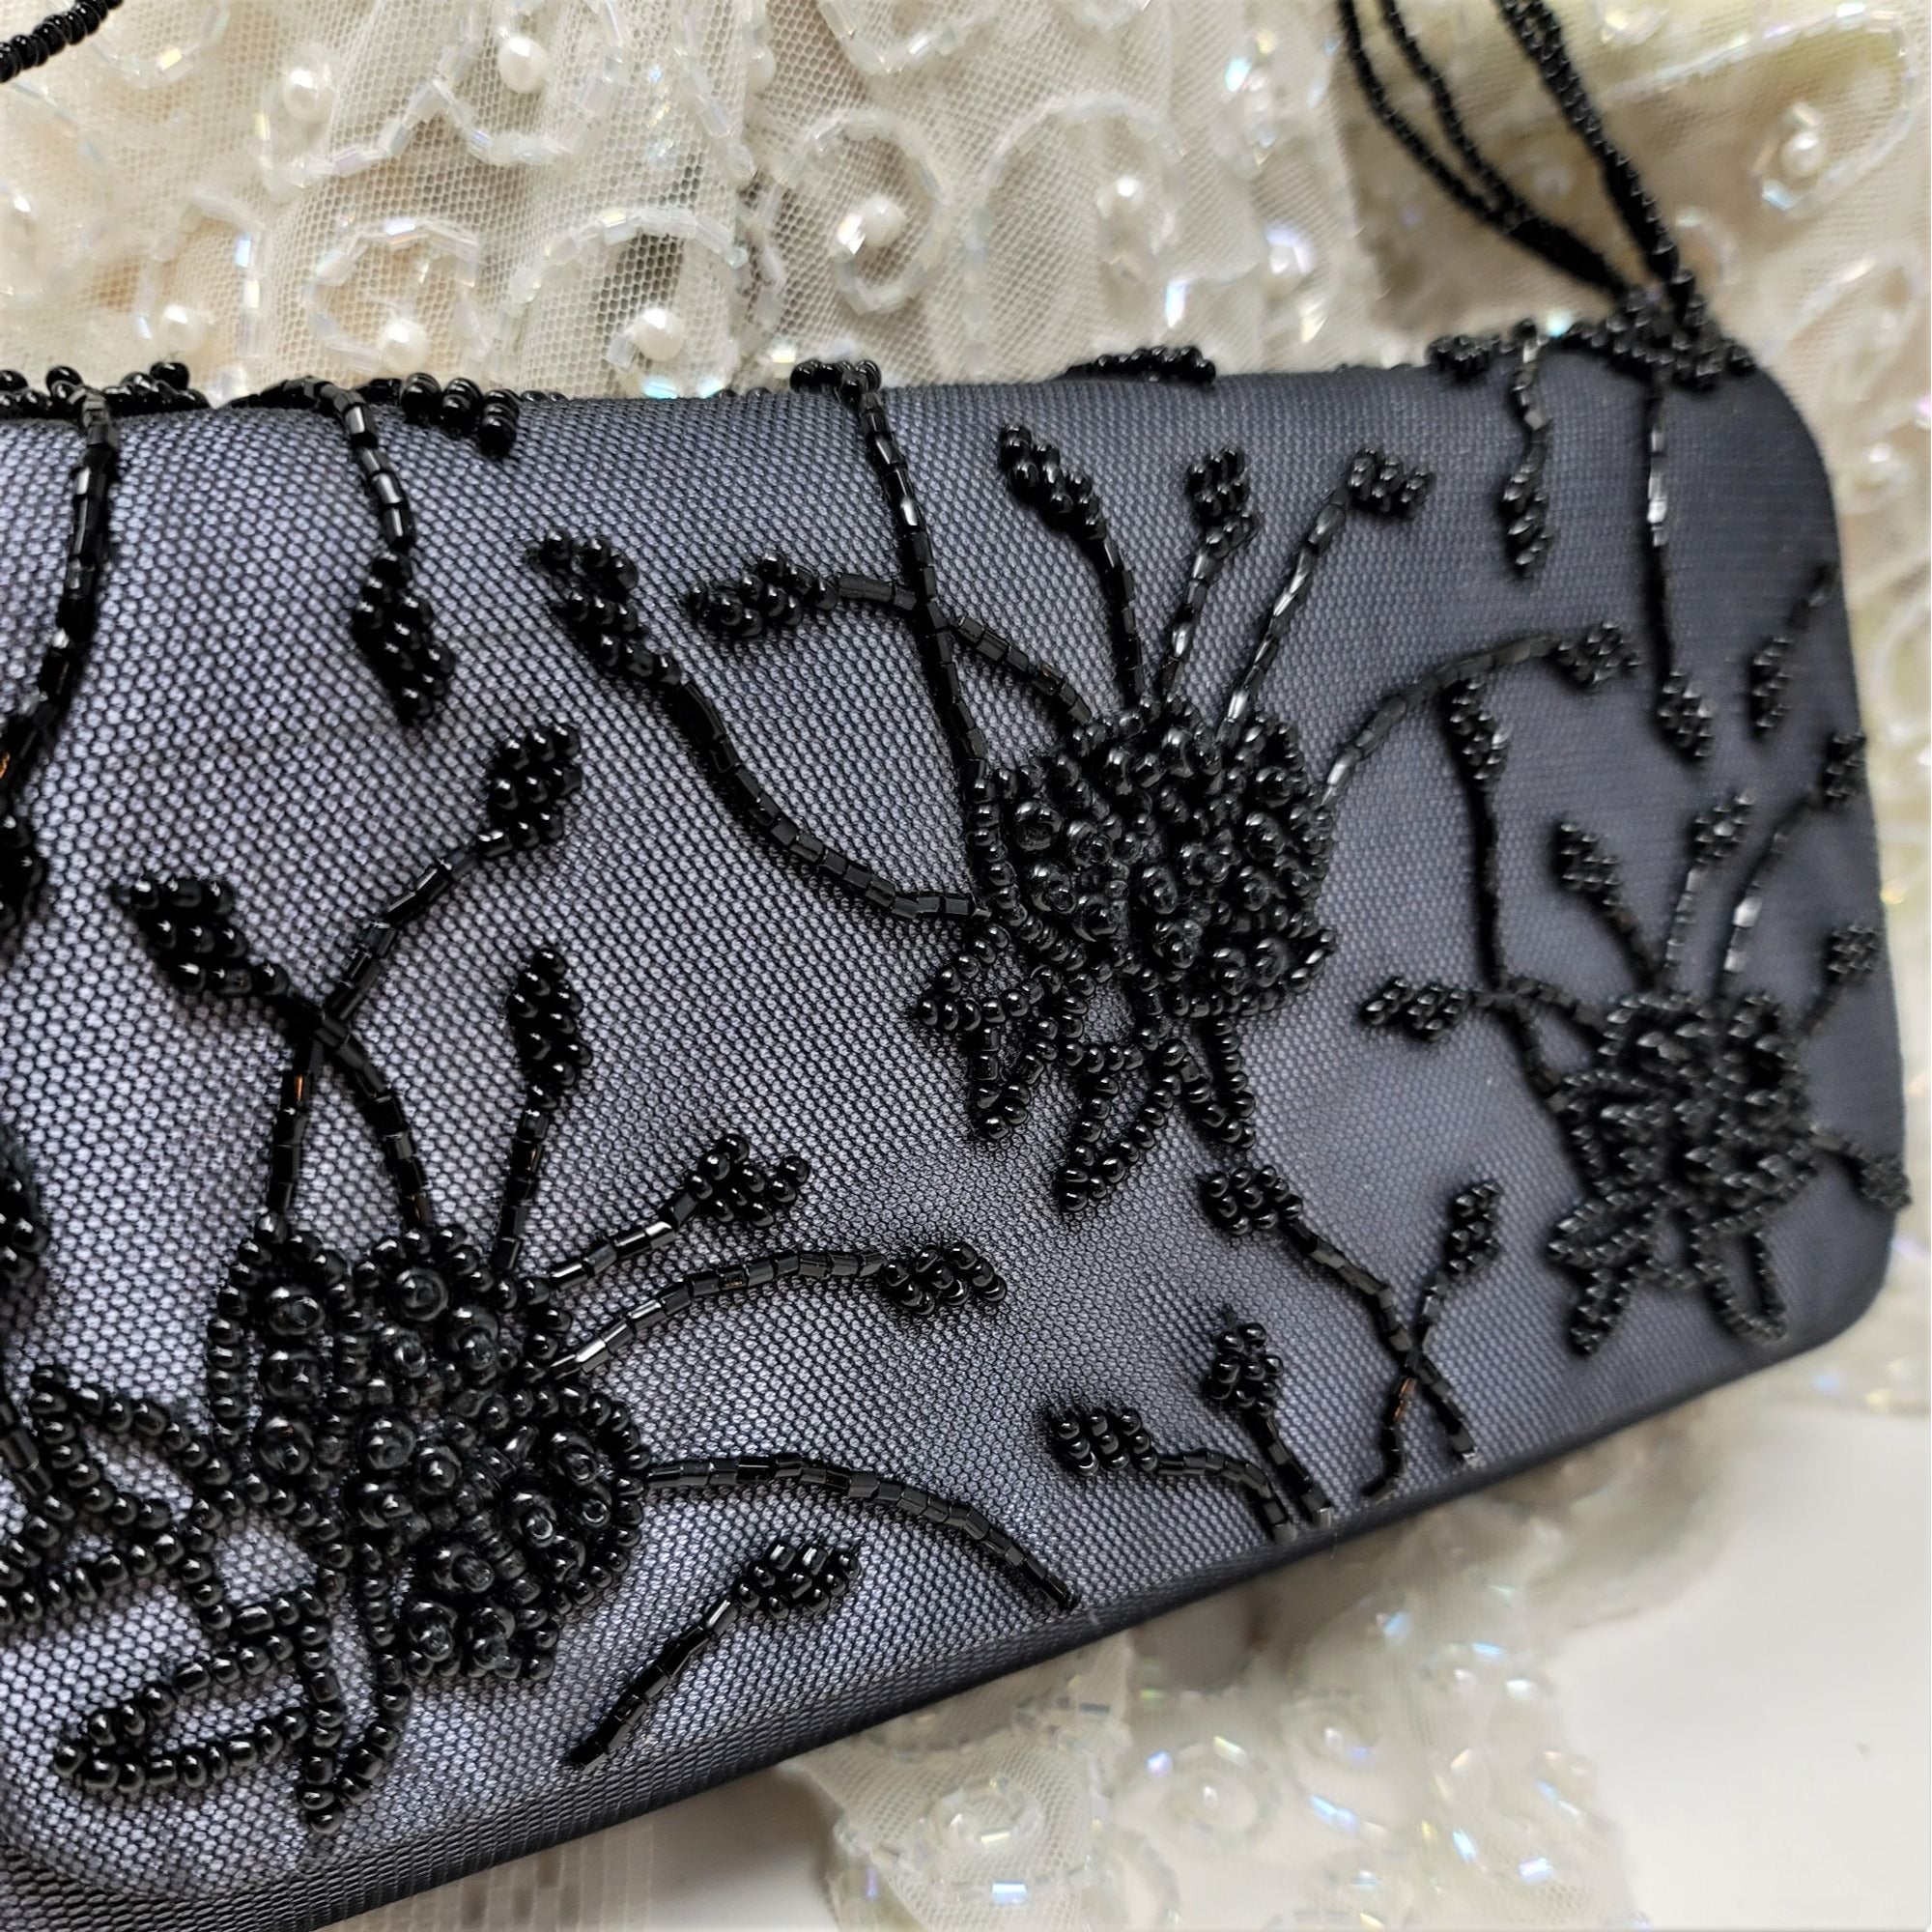 Black Beaded Evening Handbag Purse Floral Pattern